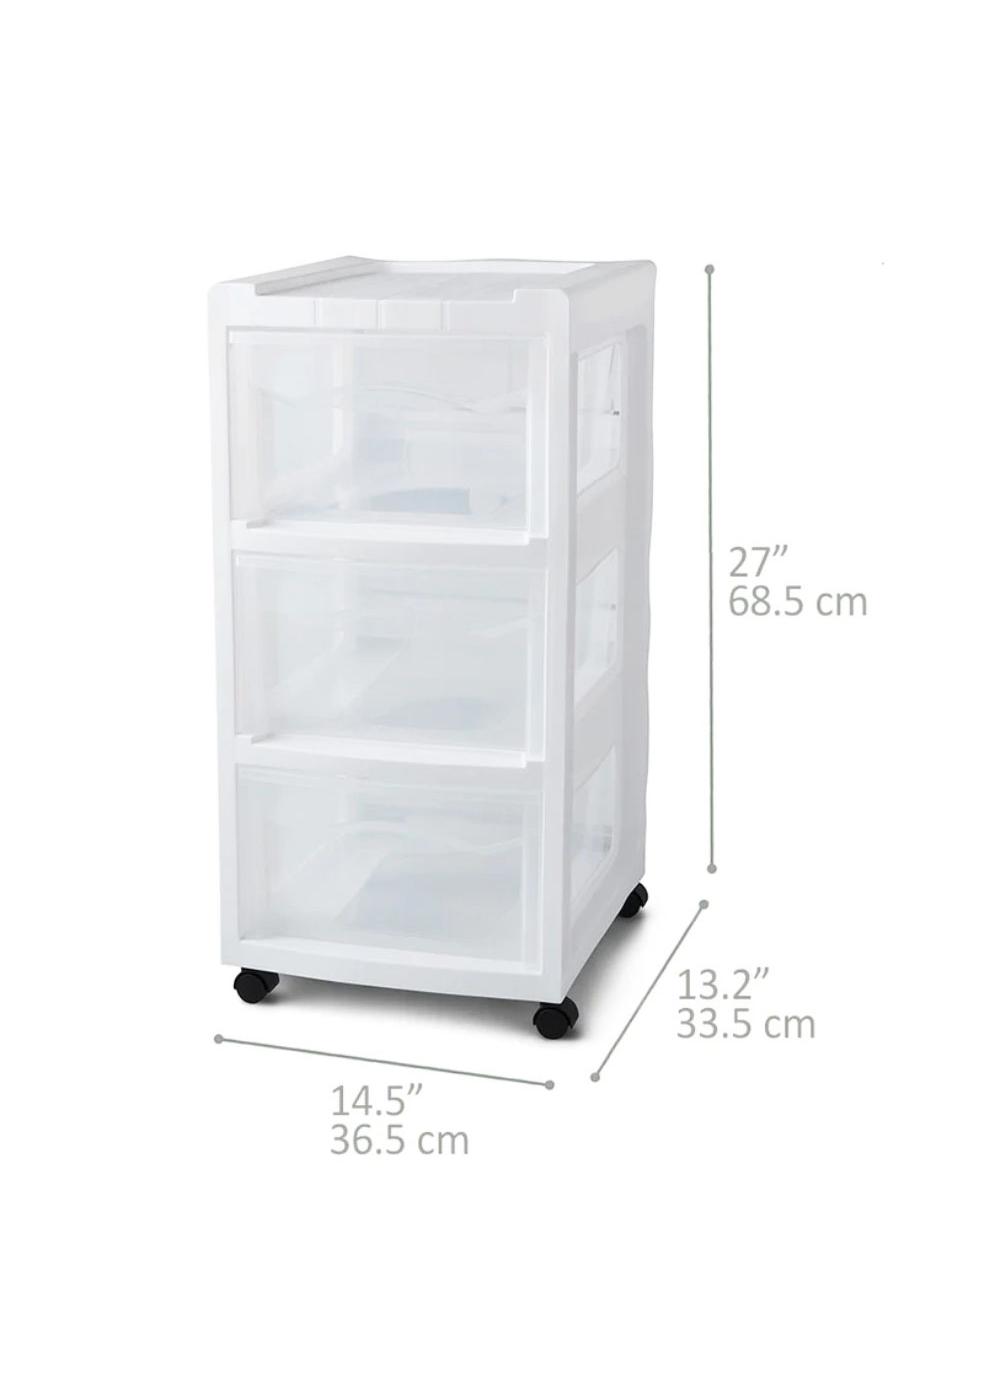 Starplast 3-Drawer Medium Plastic Storage Cart - White; image 2 of 3